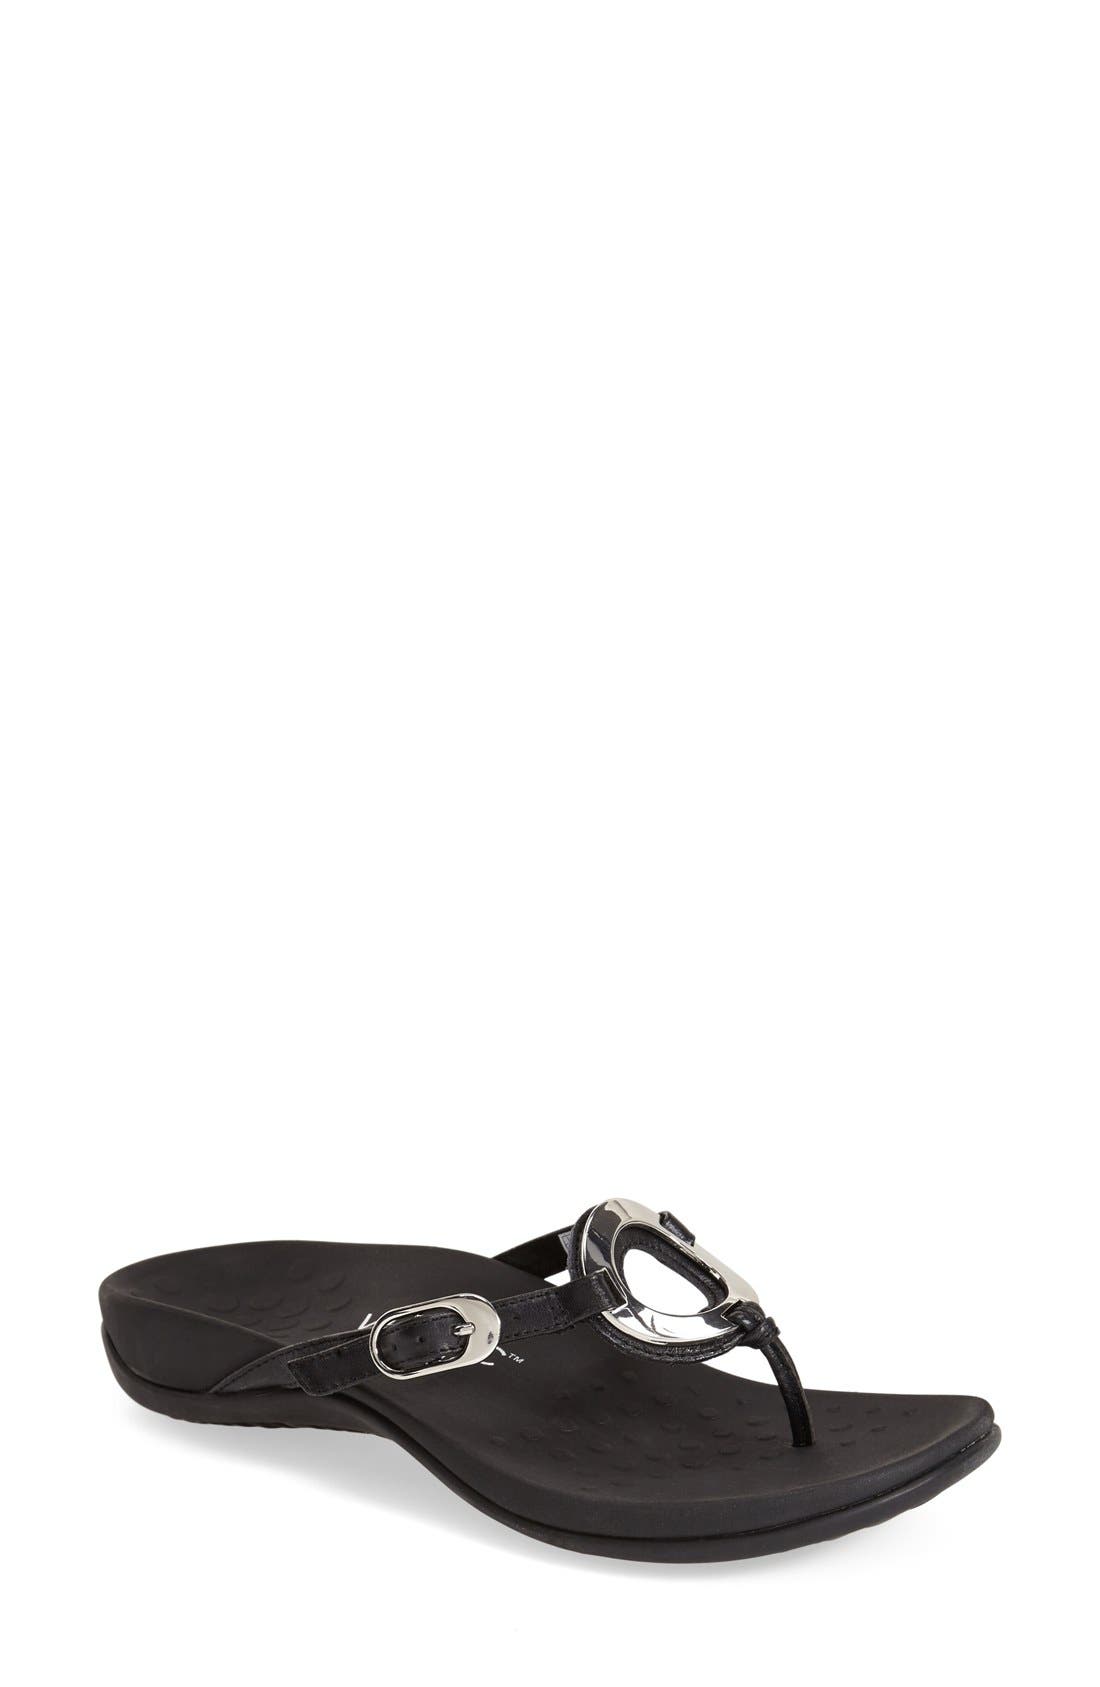 ebay dansko sandals 38